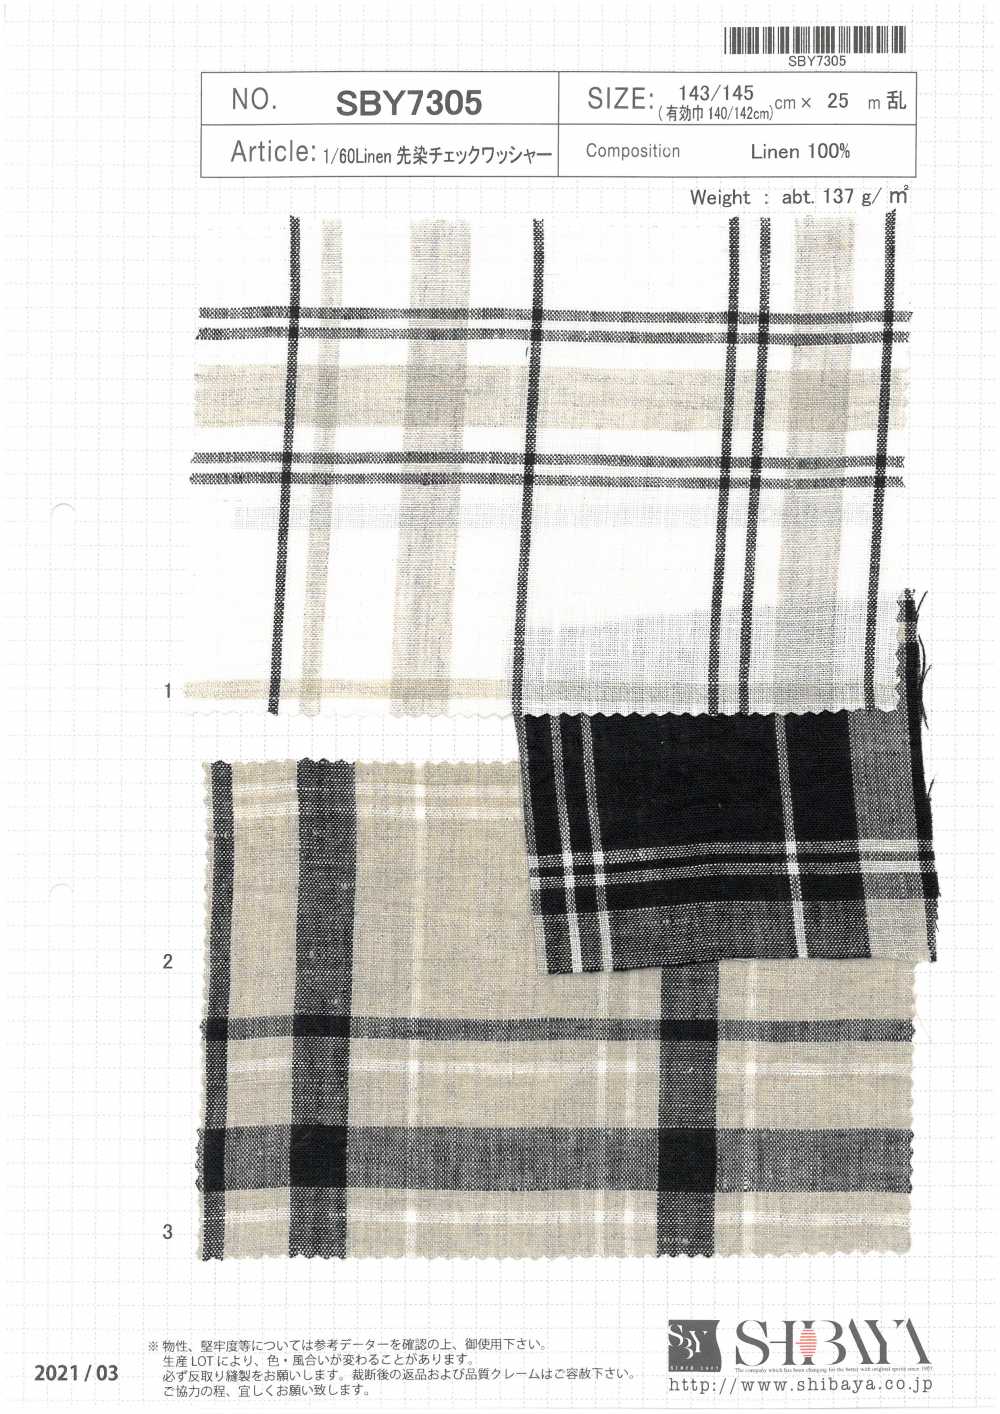 SBY7305 Lavadora A Cuadros Teñida Con Hilo De Lino 1/60[Fabrica Textil] SHIBAYA